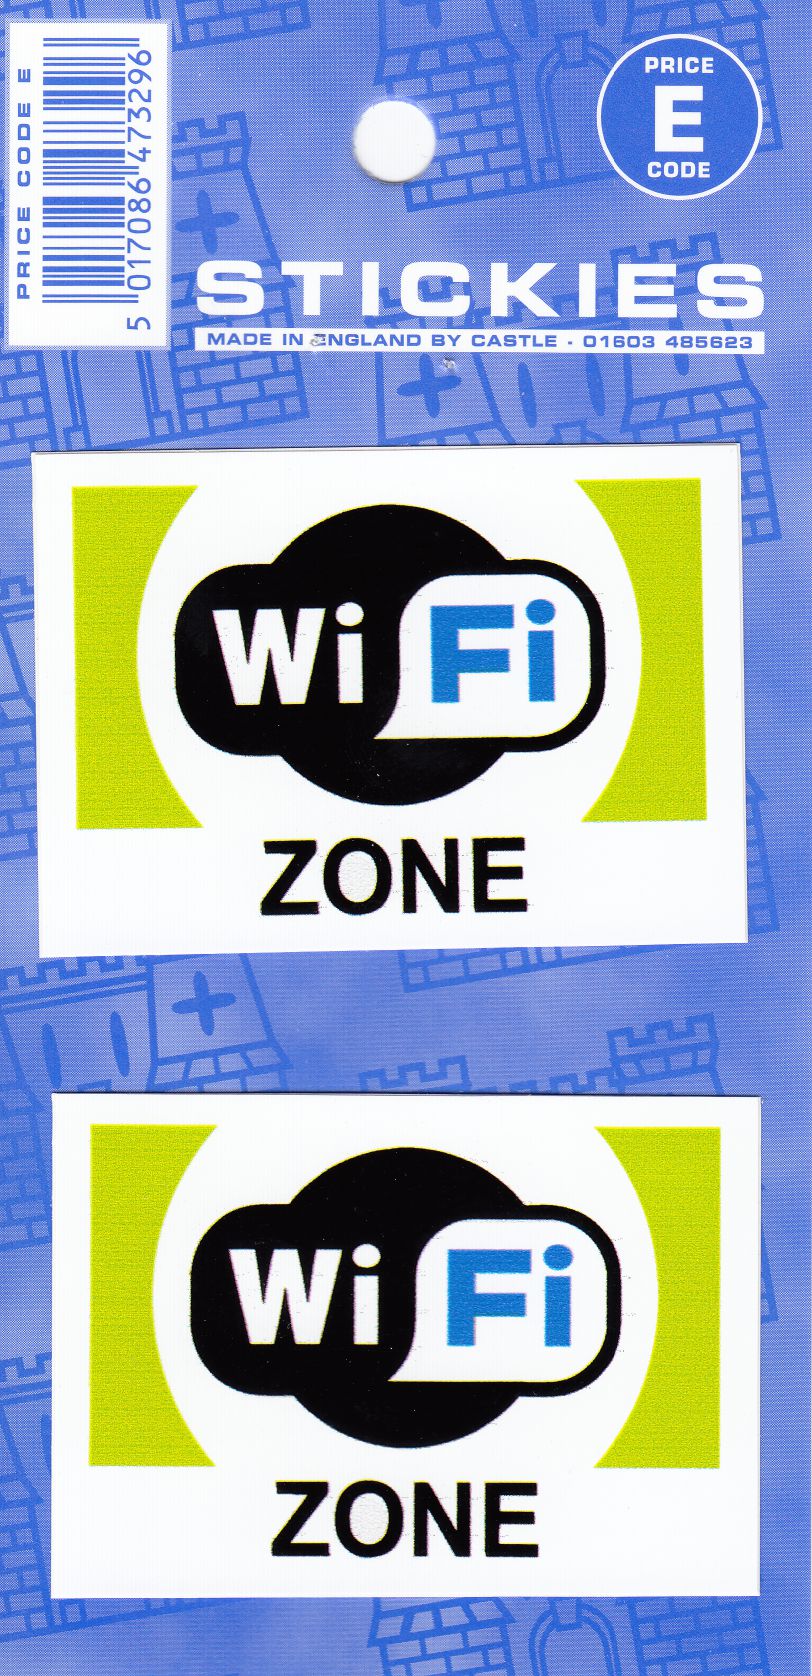 V535 WiFi Zone